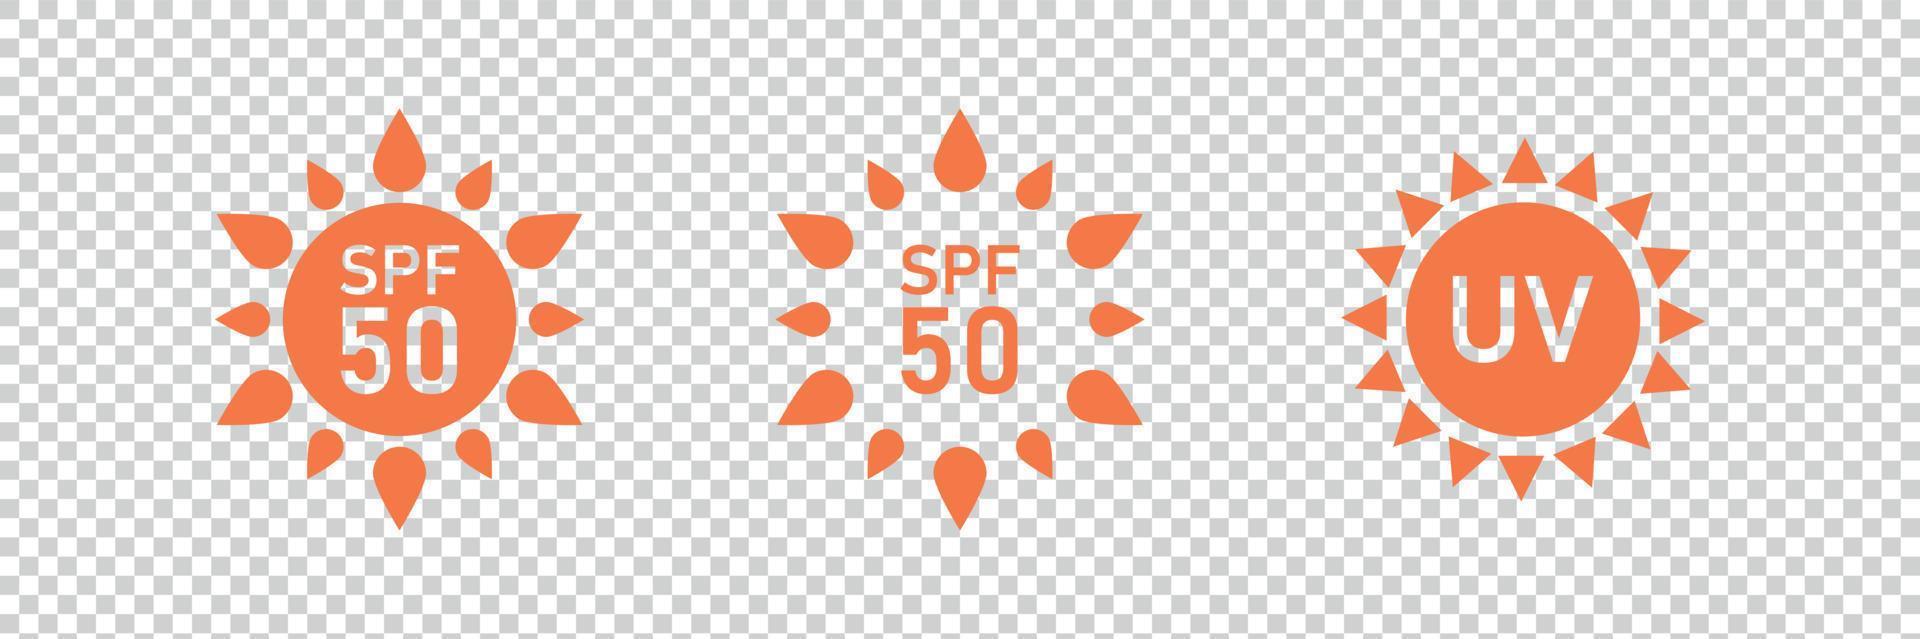 jeu d'étiquettes d'icônes de protection solaire spf 50. vecteur